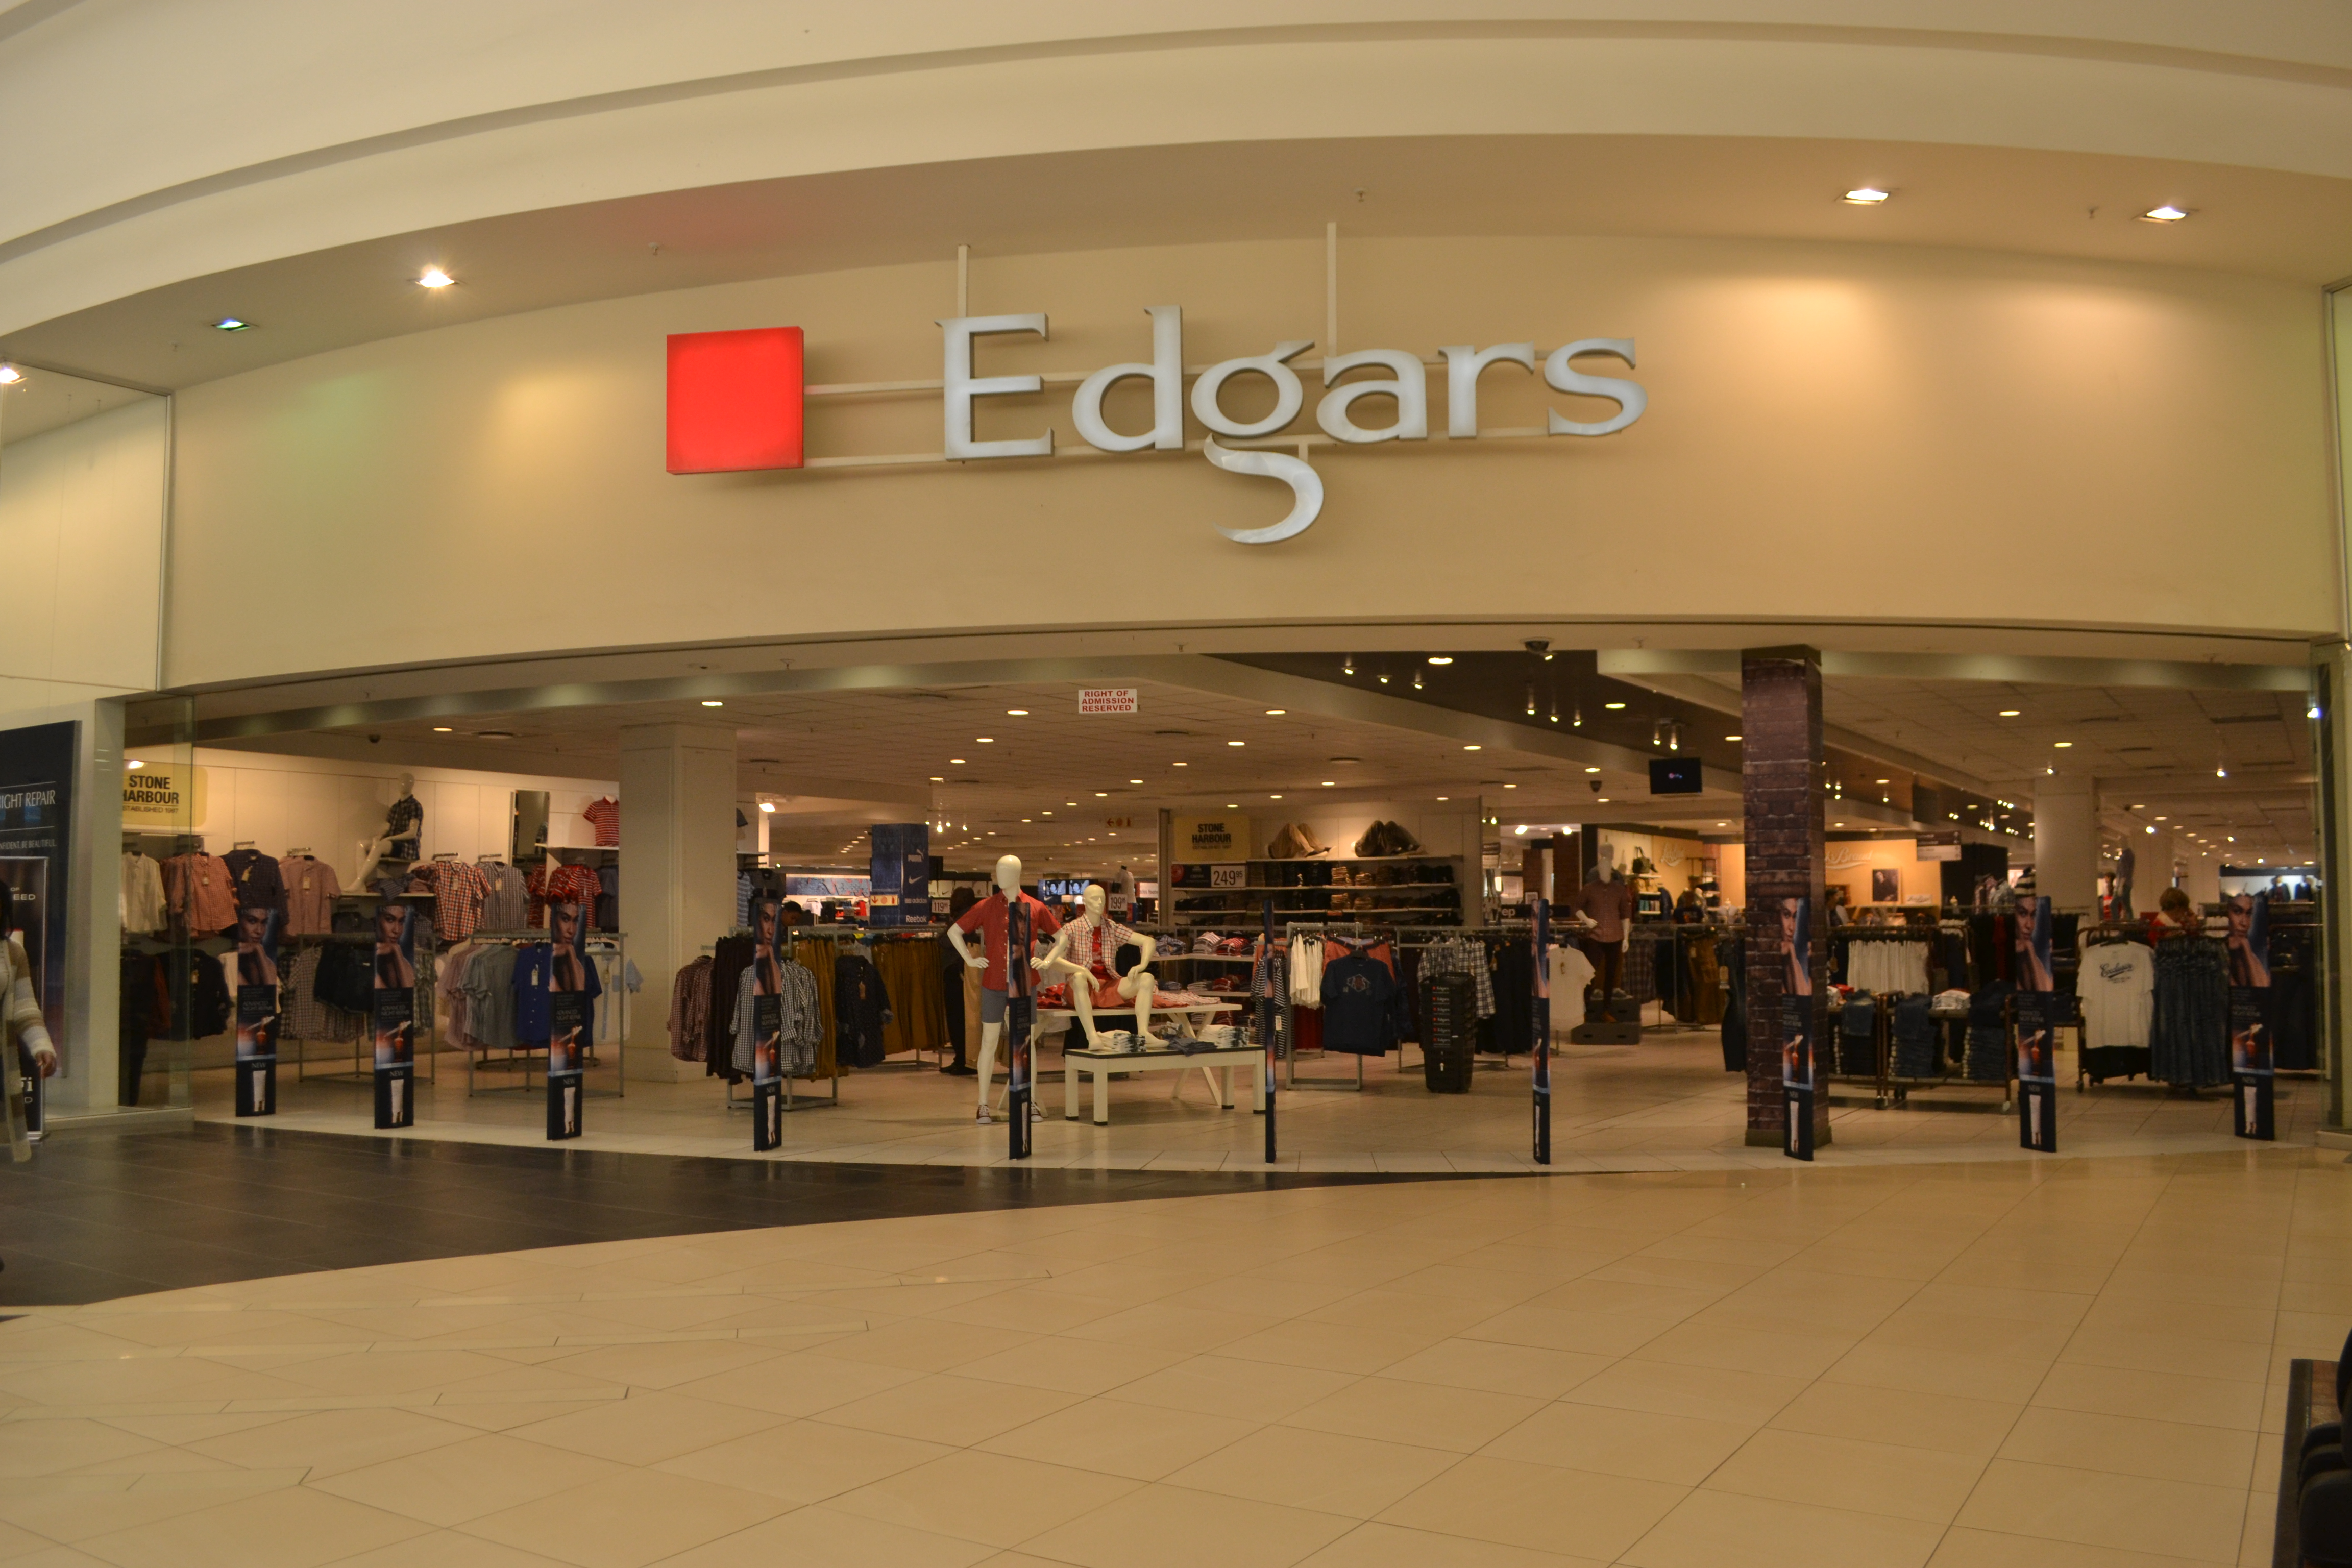 Edgars store face closure